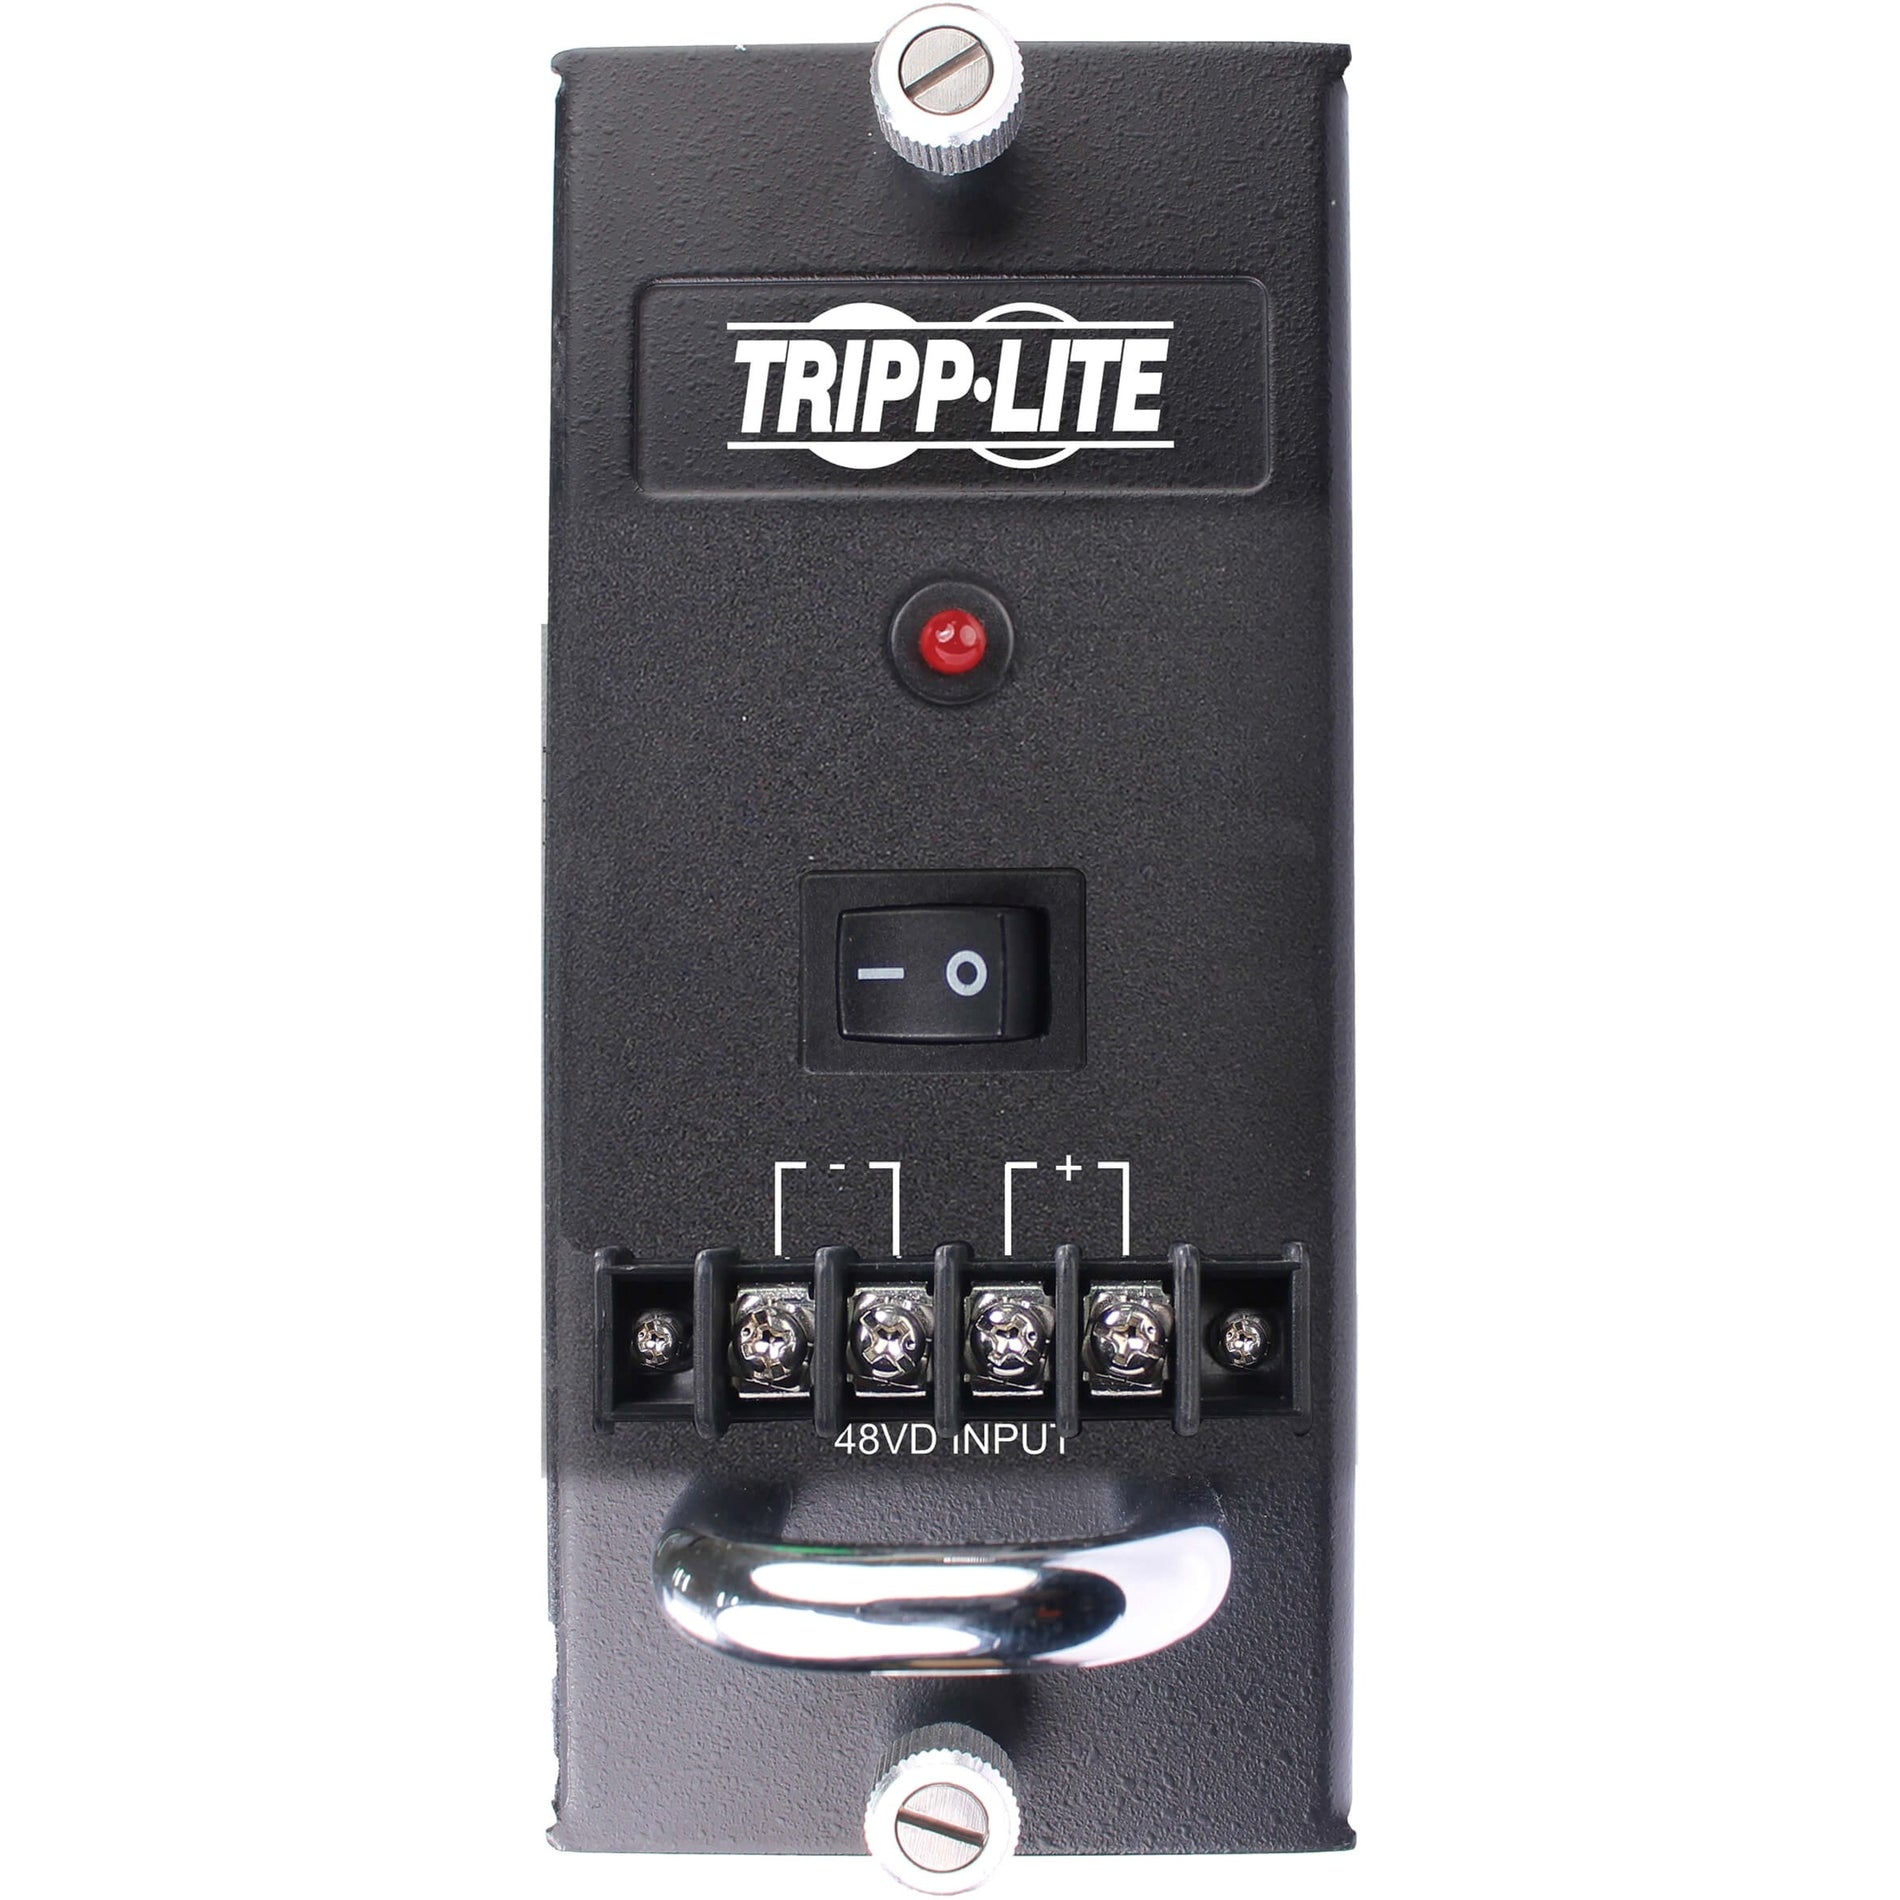 Tripp Lite N785-CH75W-DC 75W Power Supply, 3 Year Warranty, 12V @ 6.5A Output Power